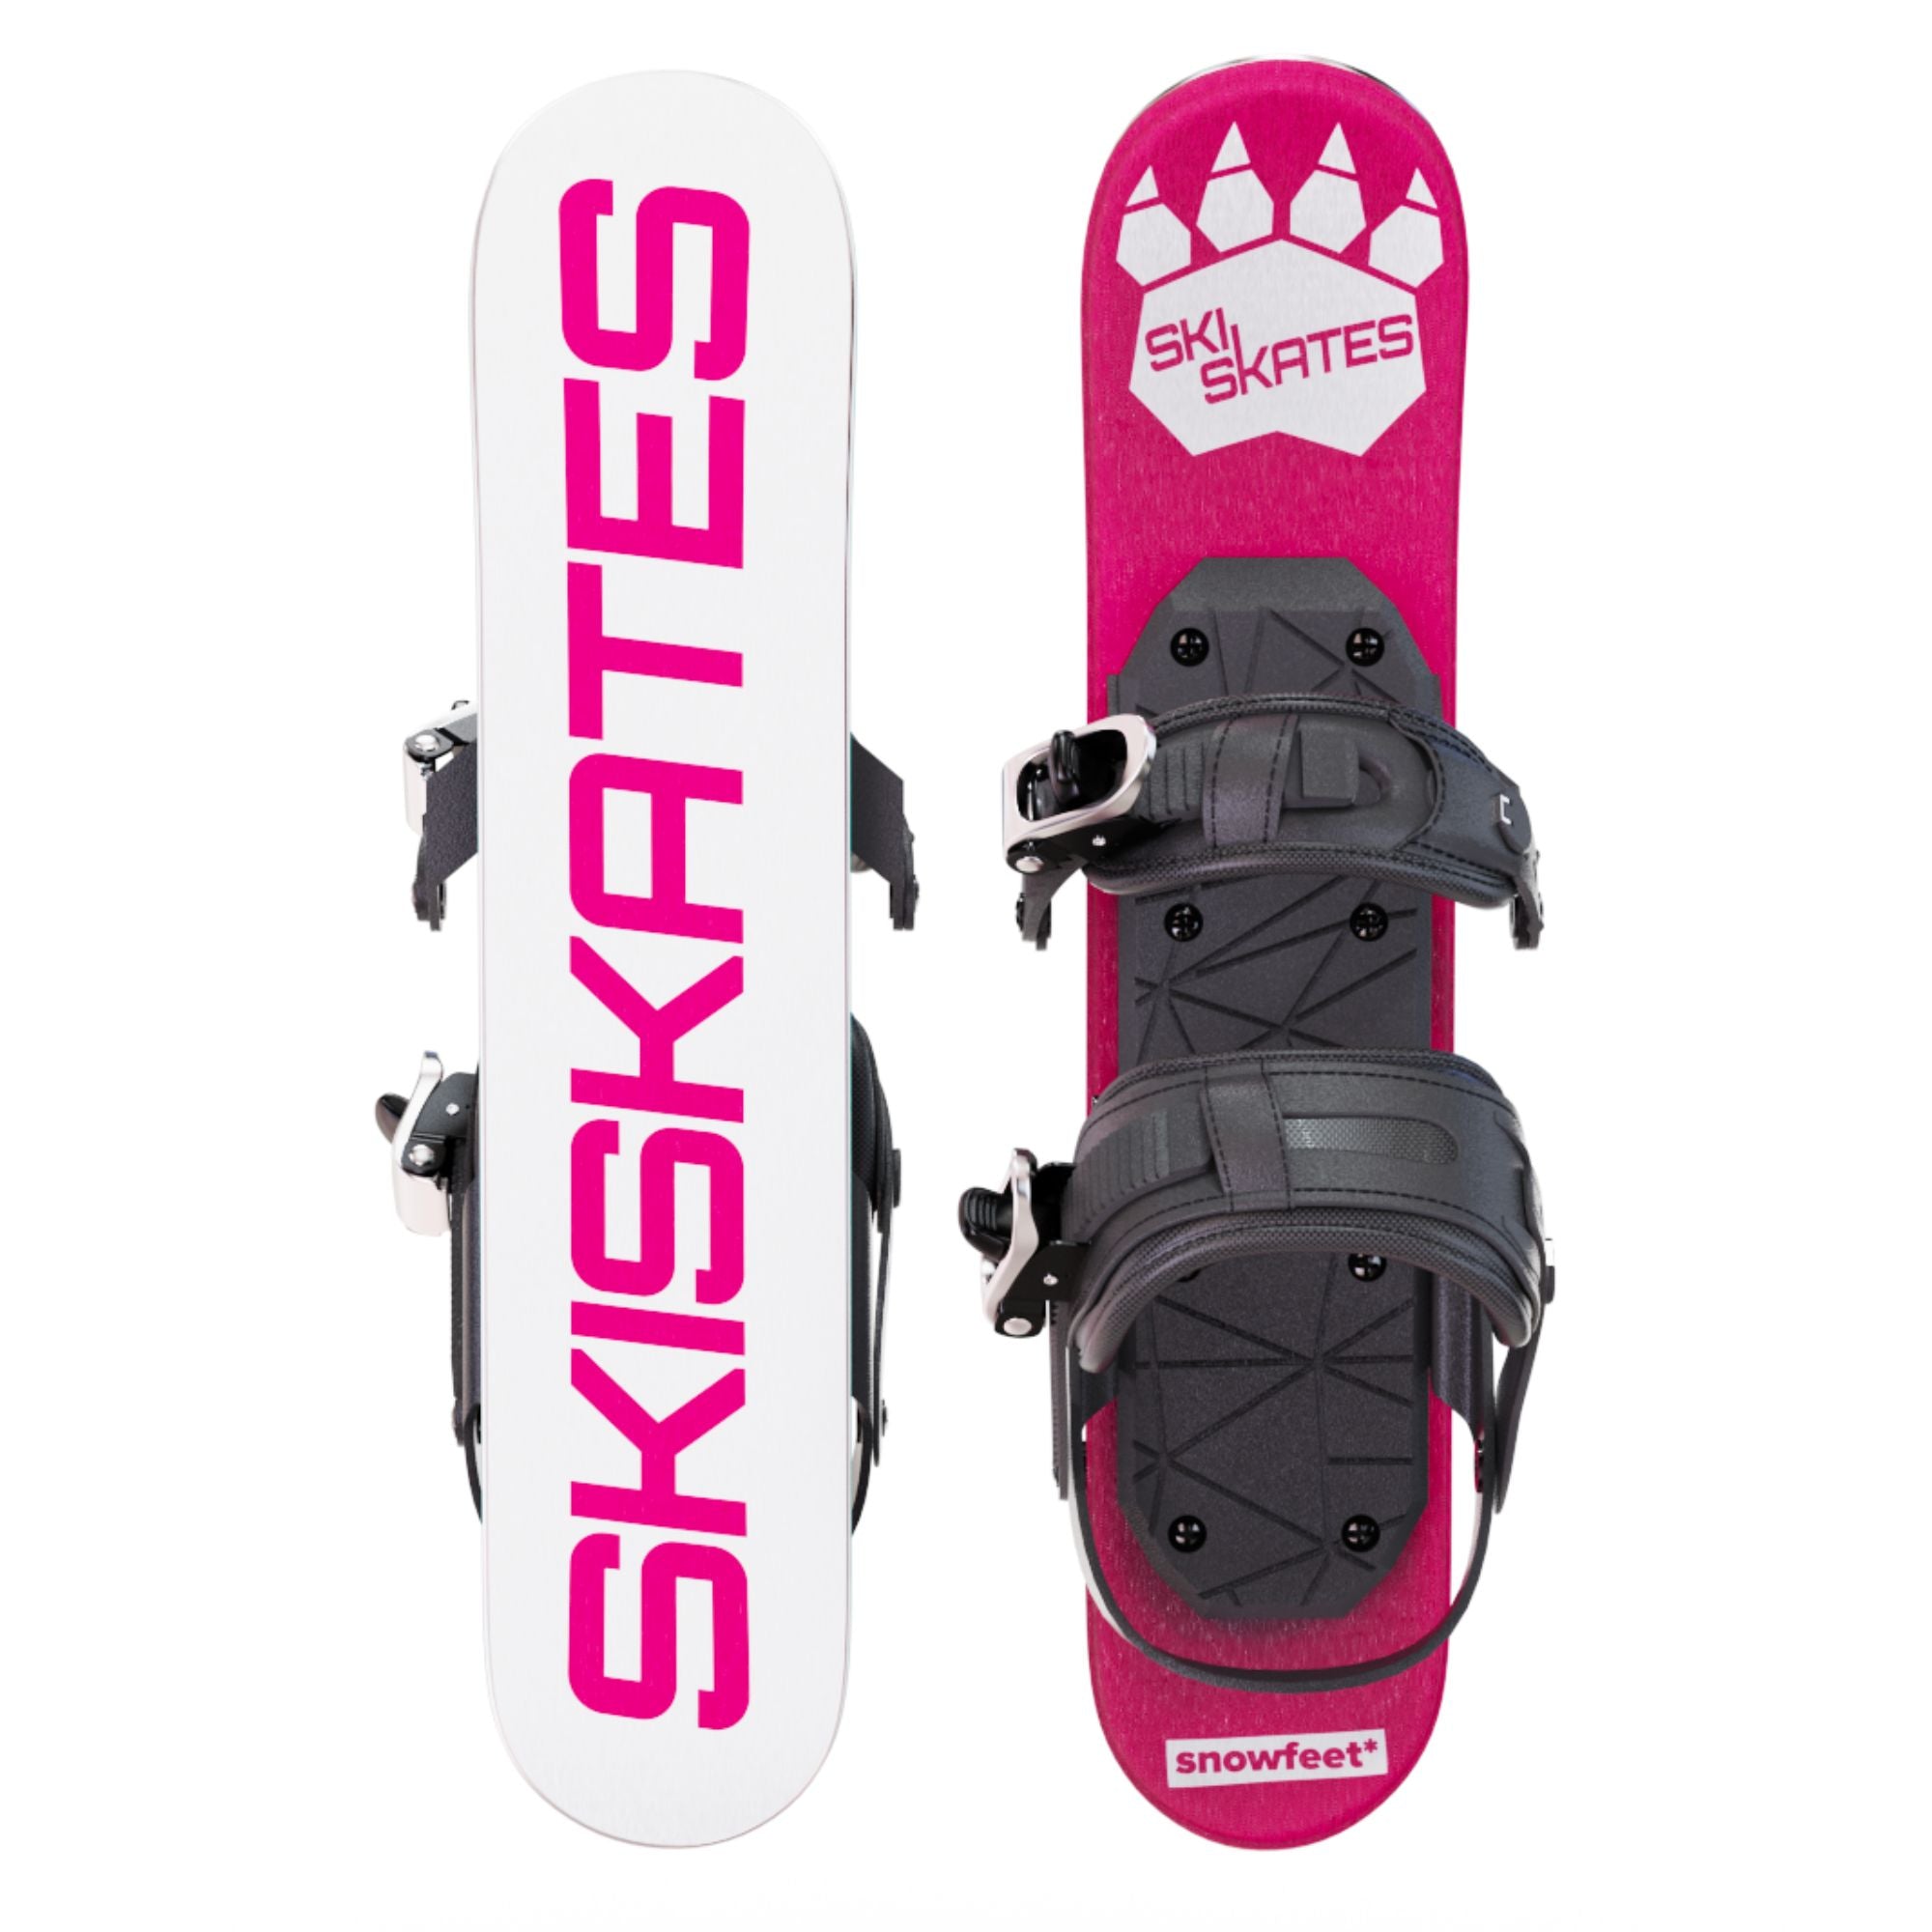 skiskates スキースケートウィンタースポーツ